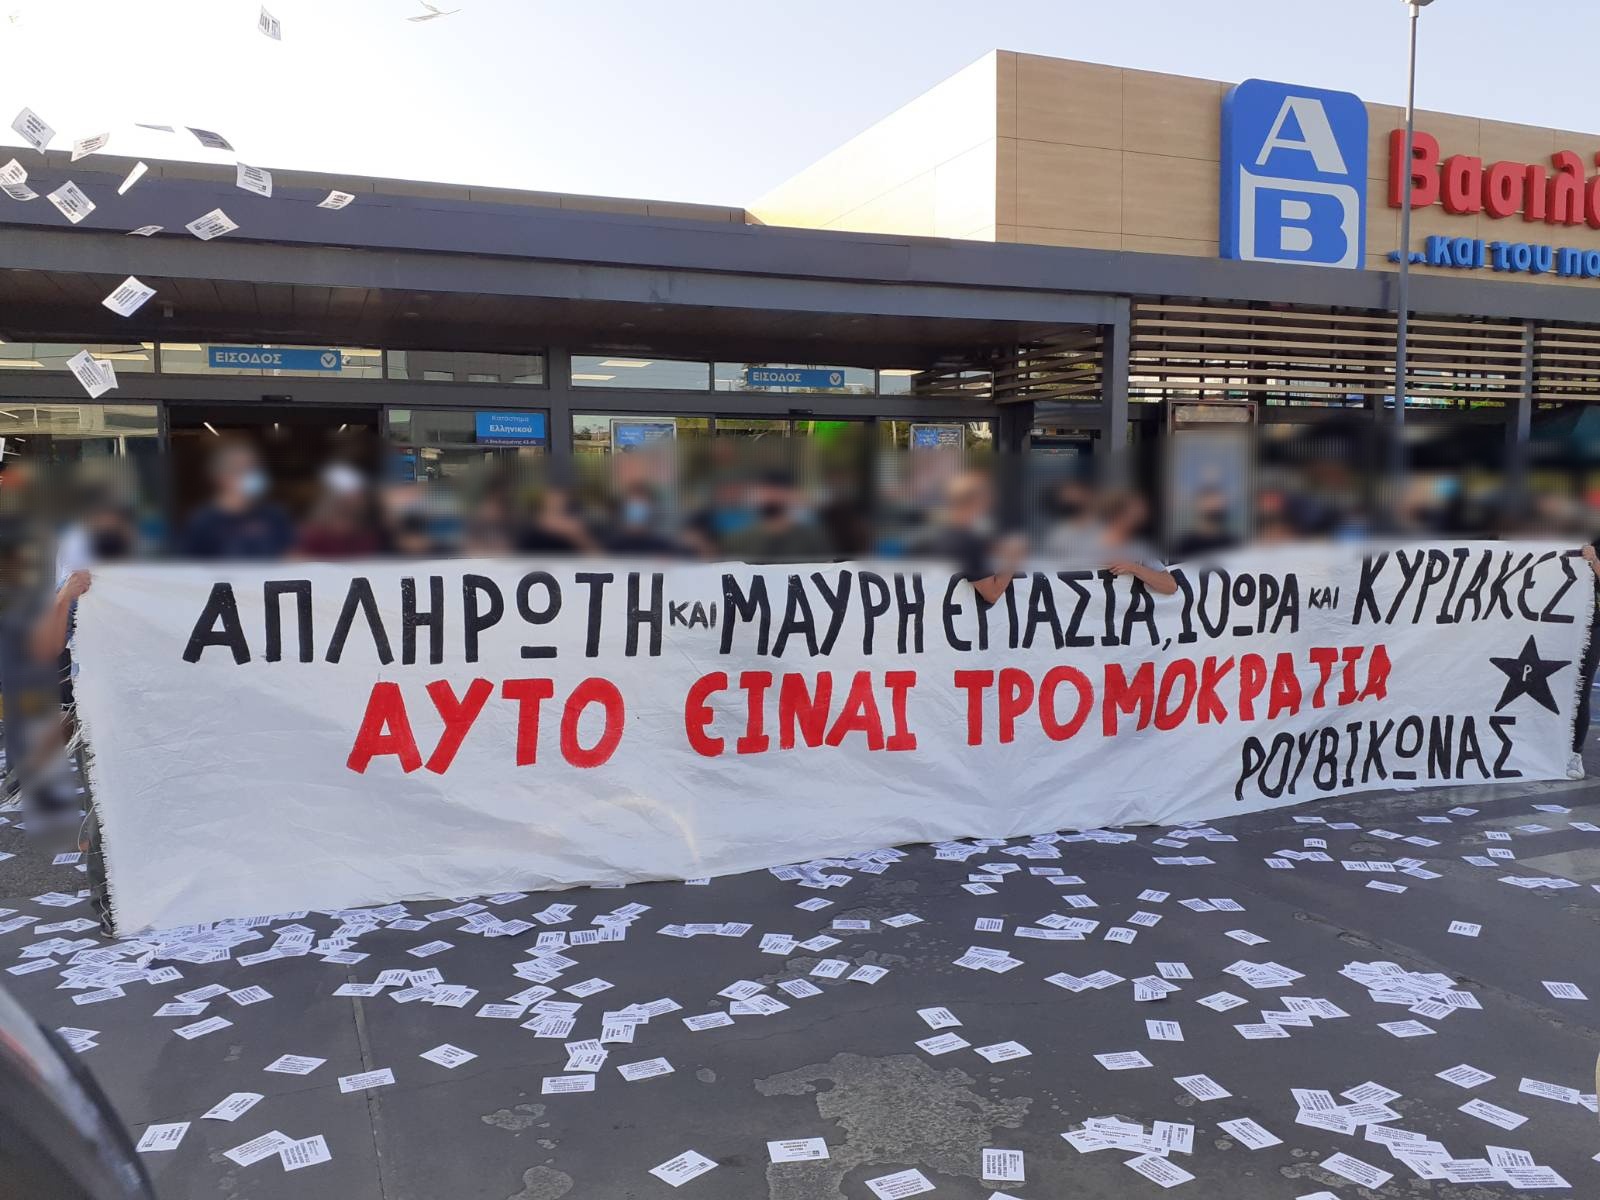 Ρουβίκωνας: Συγκέντρωση σε κατάστημα ΑΒ Βασιλόπουλος